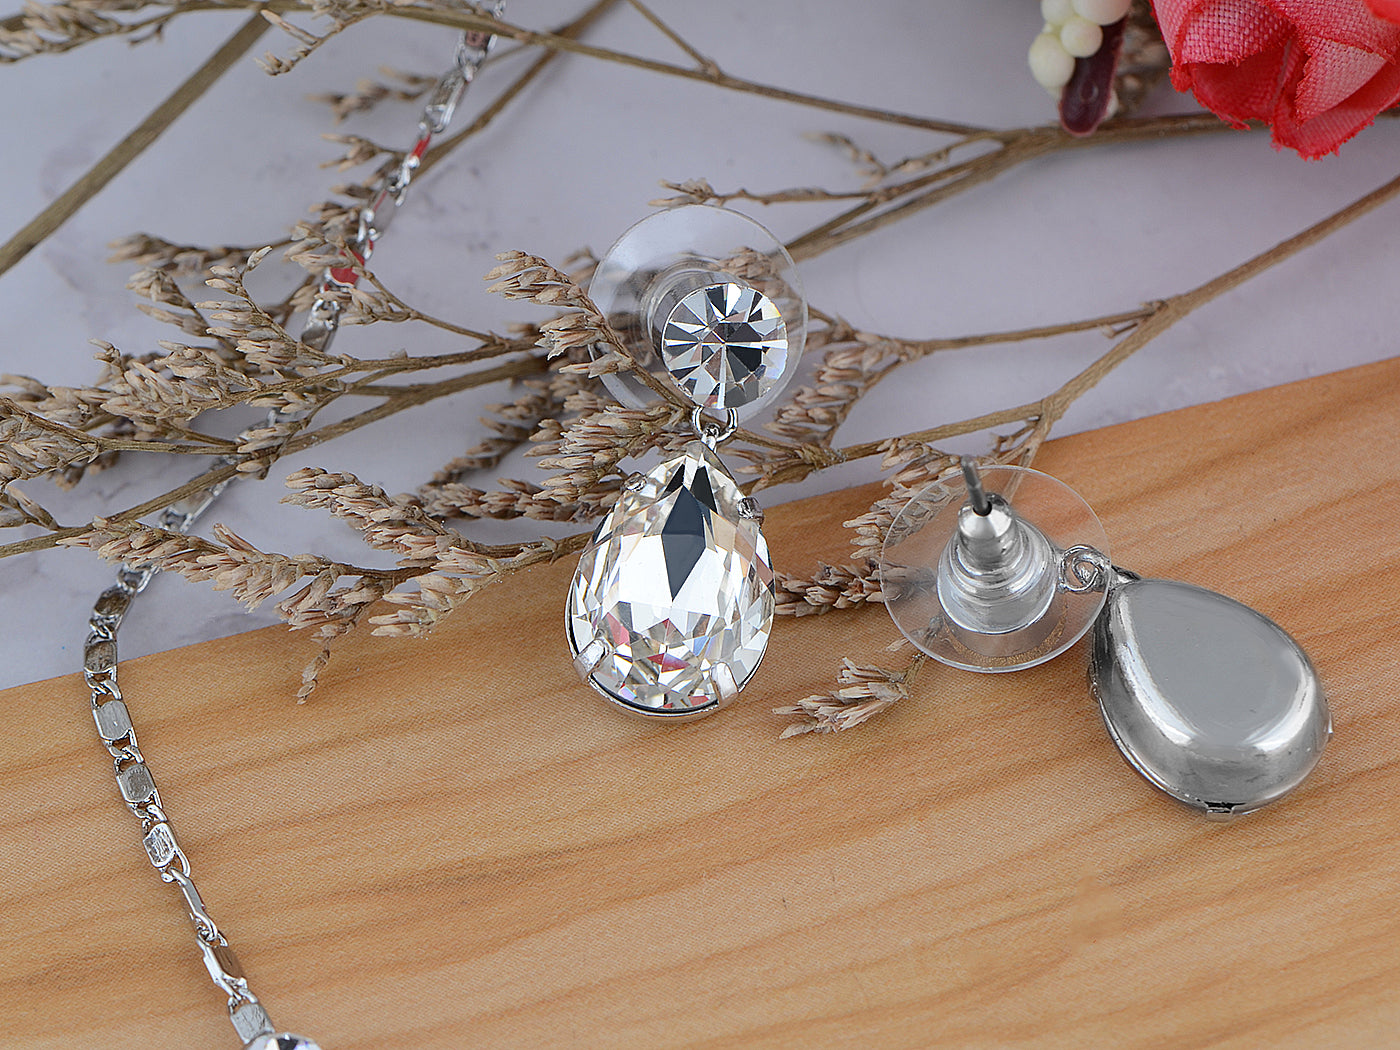 Swarovski Crystal Element Prismatic Bejewel Charm Earring Necklace Set